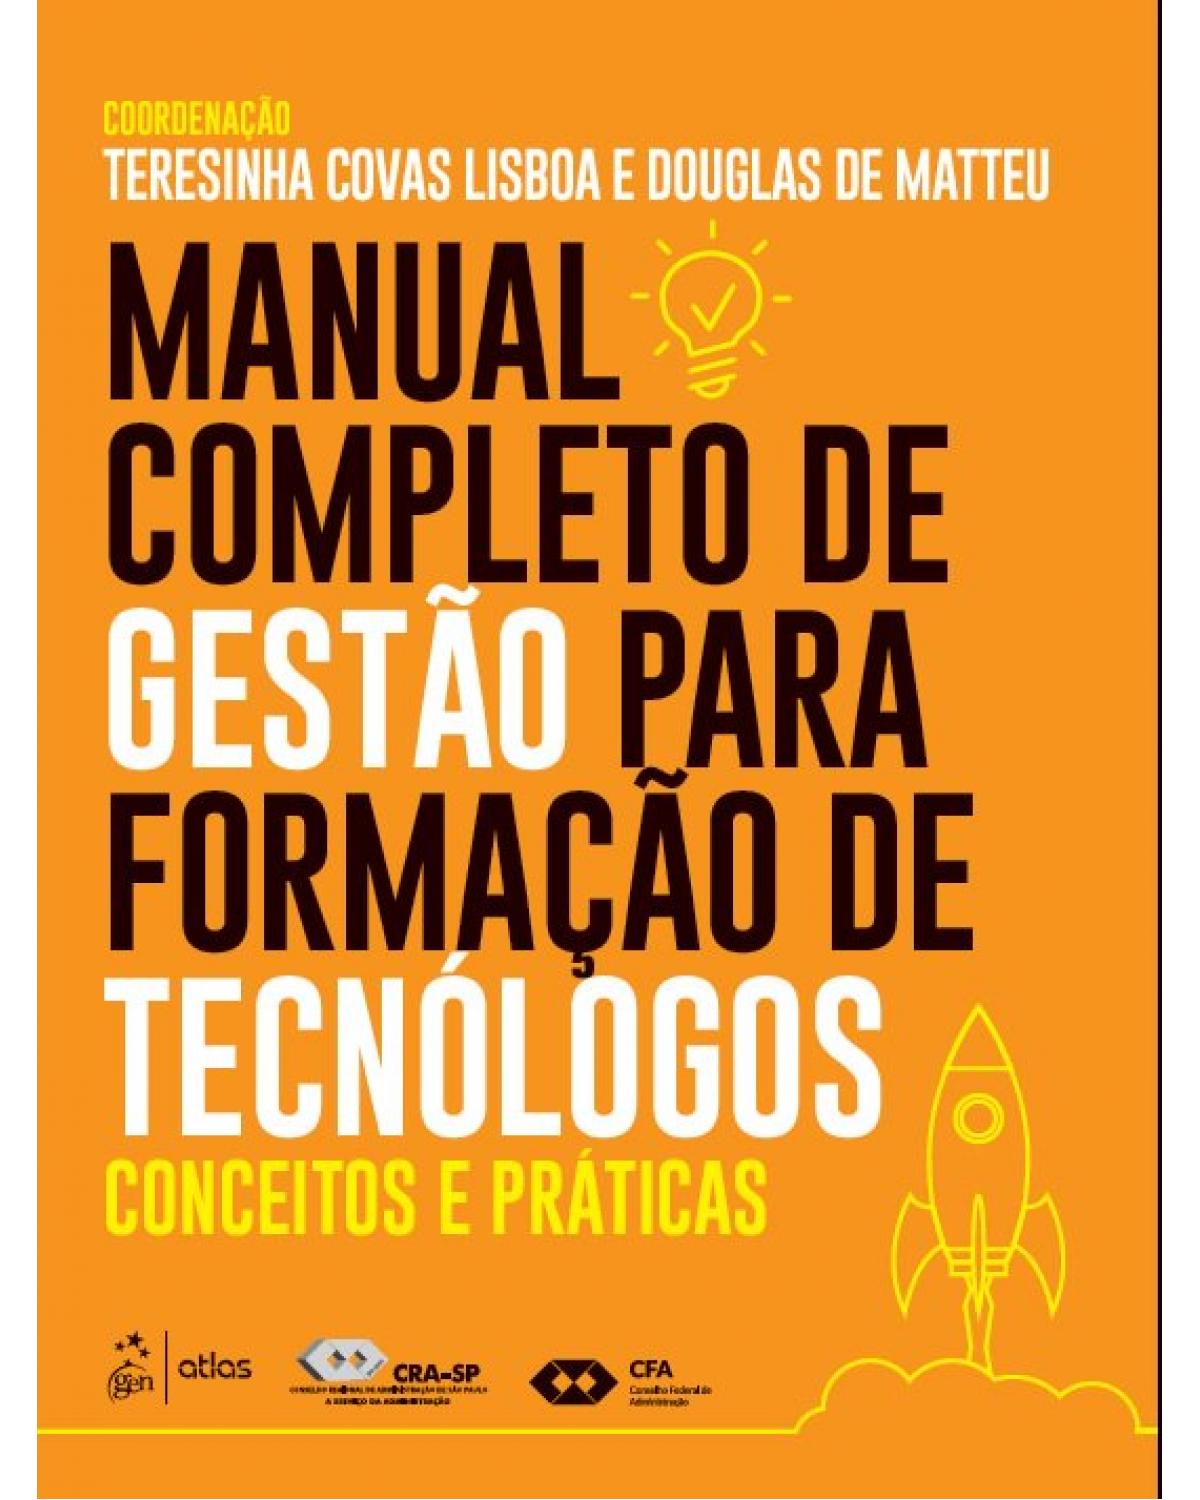 Manual completo de gestão para formação de tecnólogos - conceitos e práticas - 1ª Edição | 2019